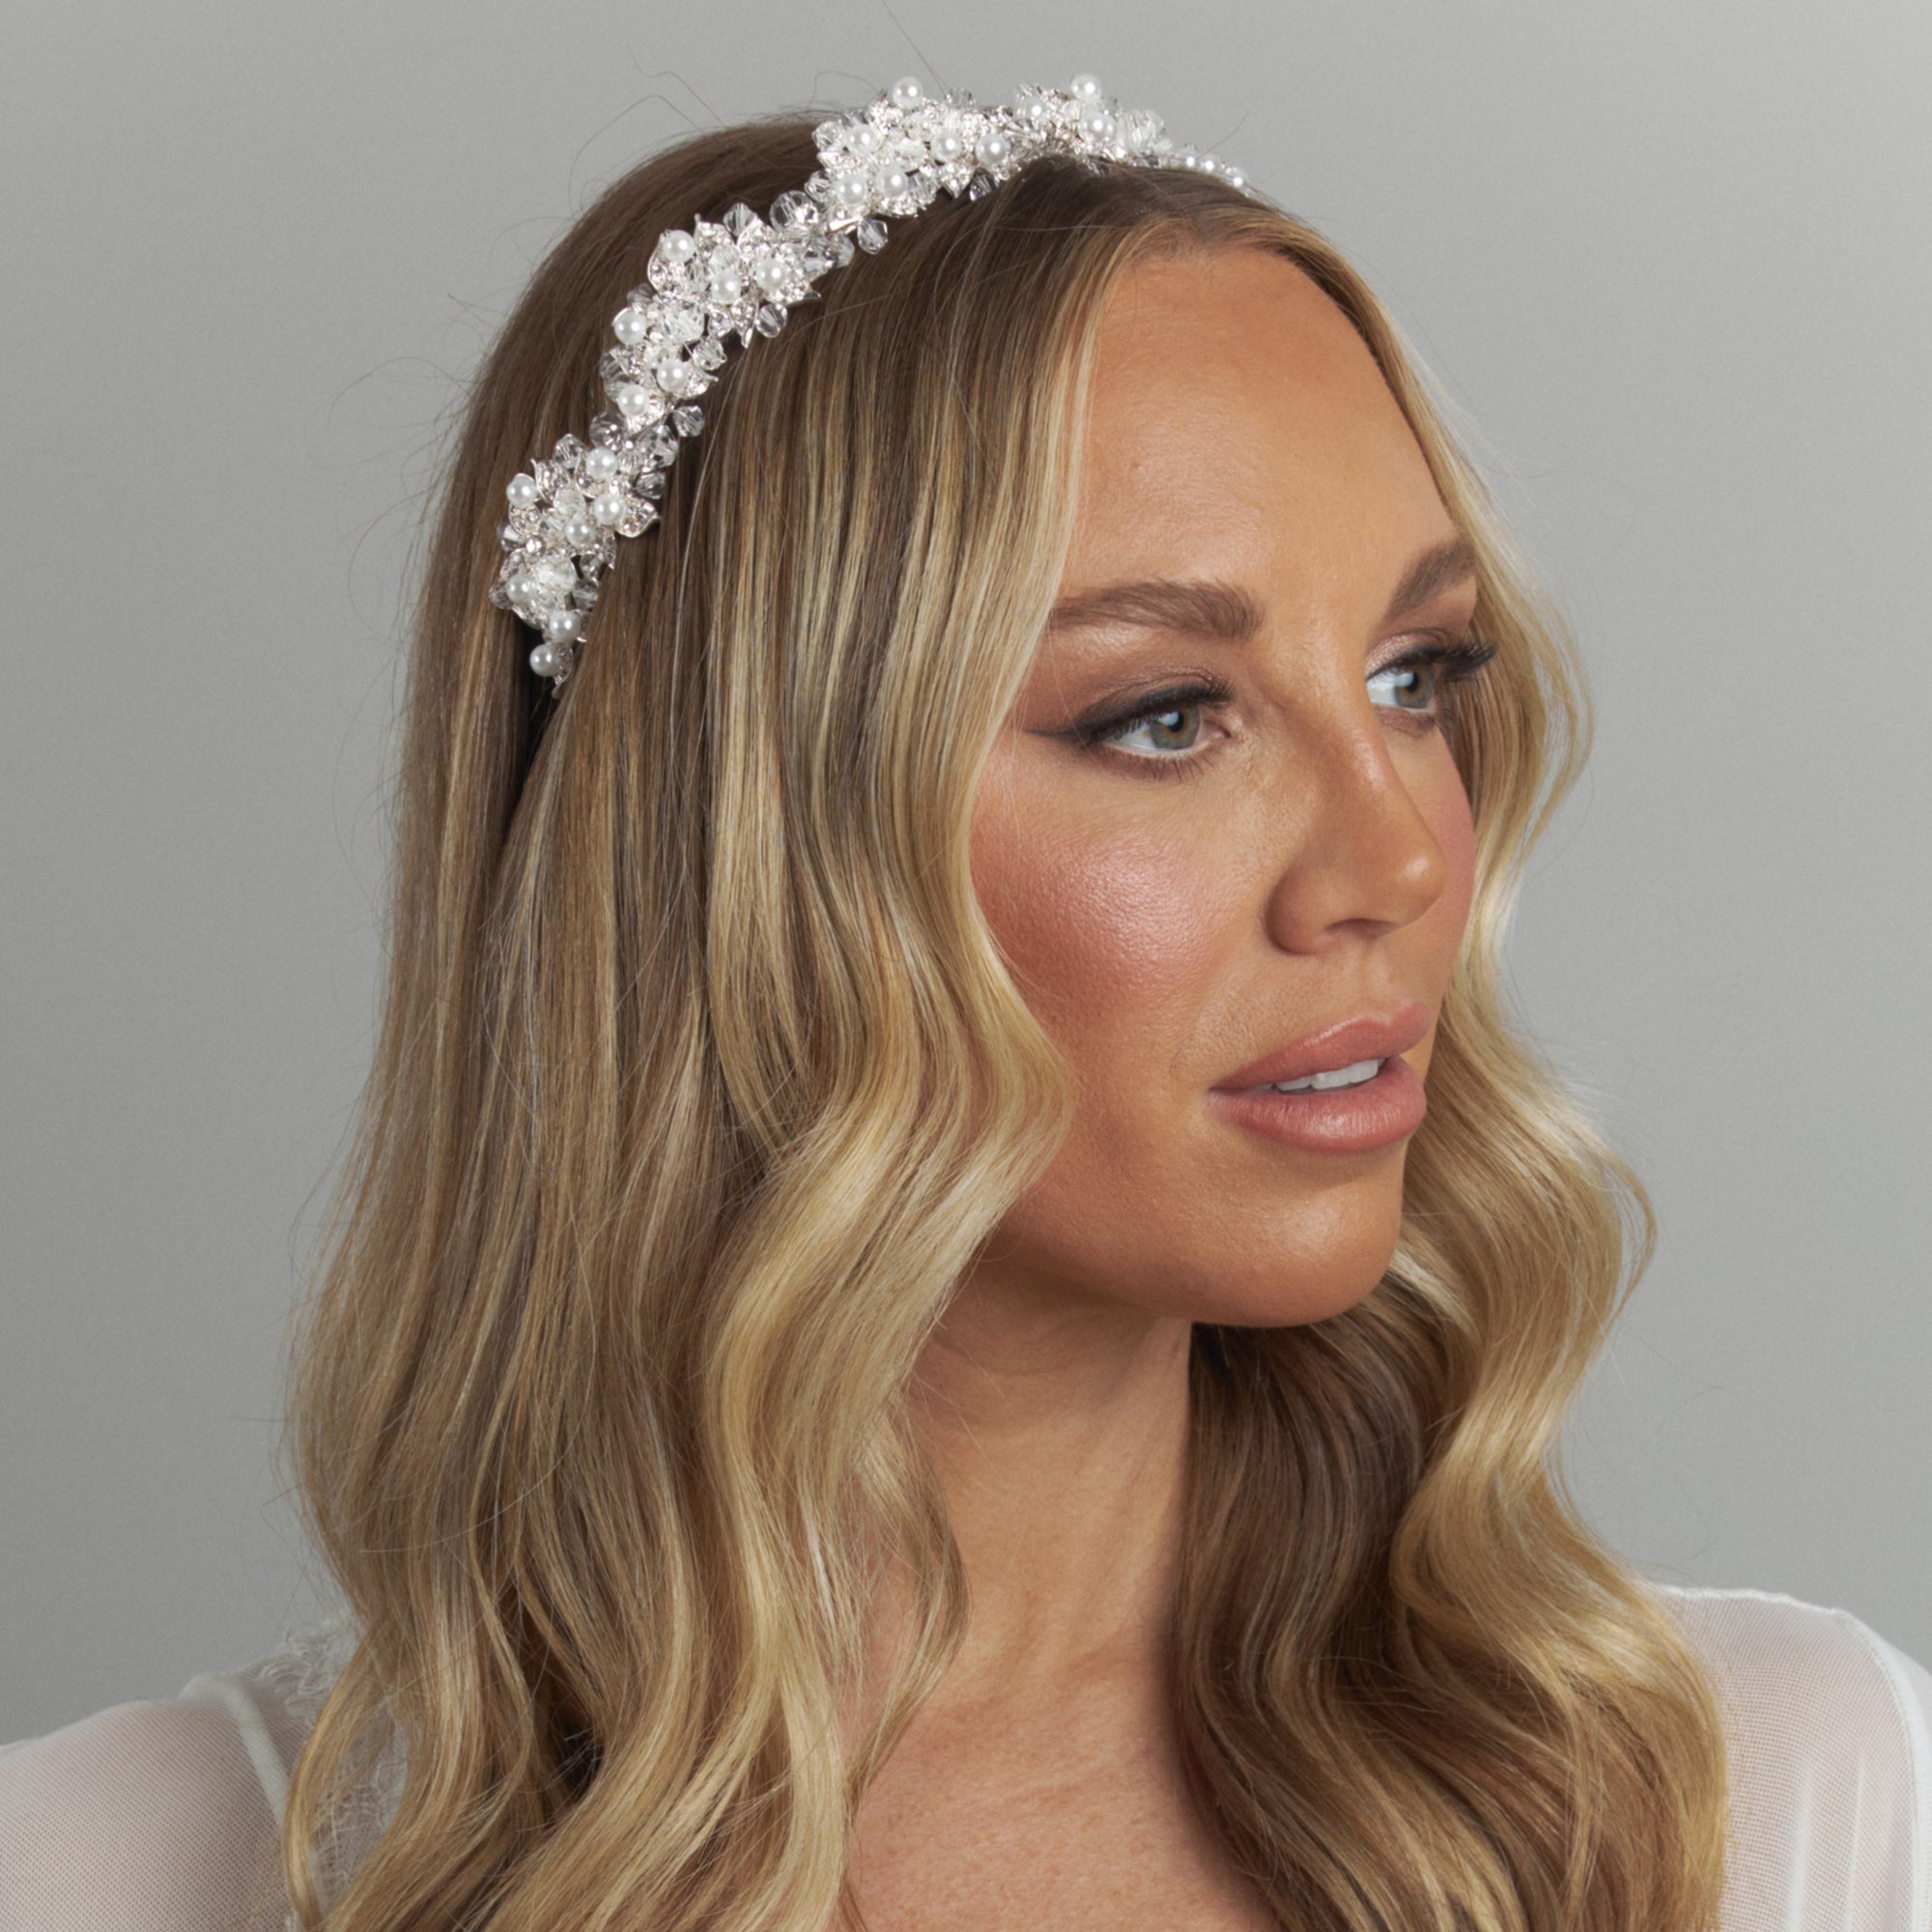 Dani bridal wedding headband headpiece Crystal pearl